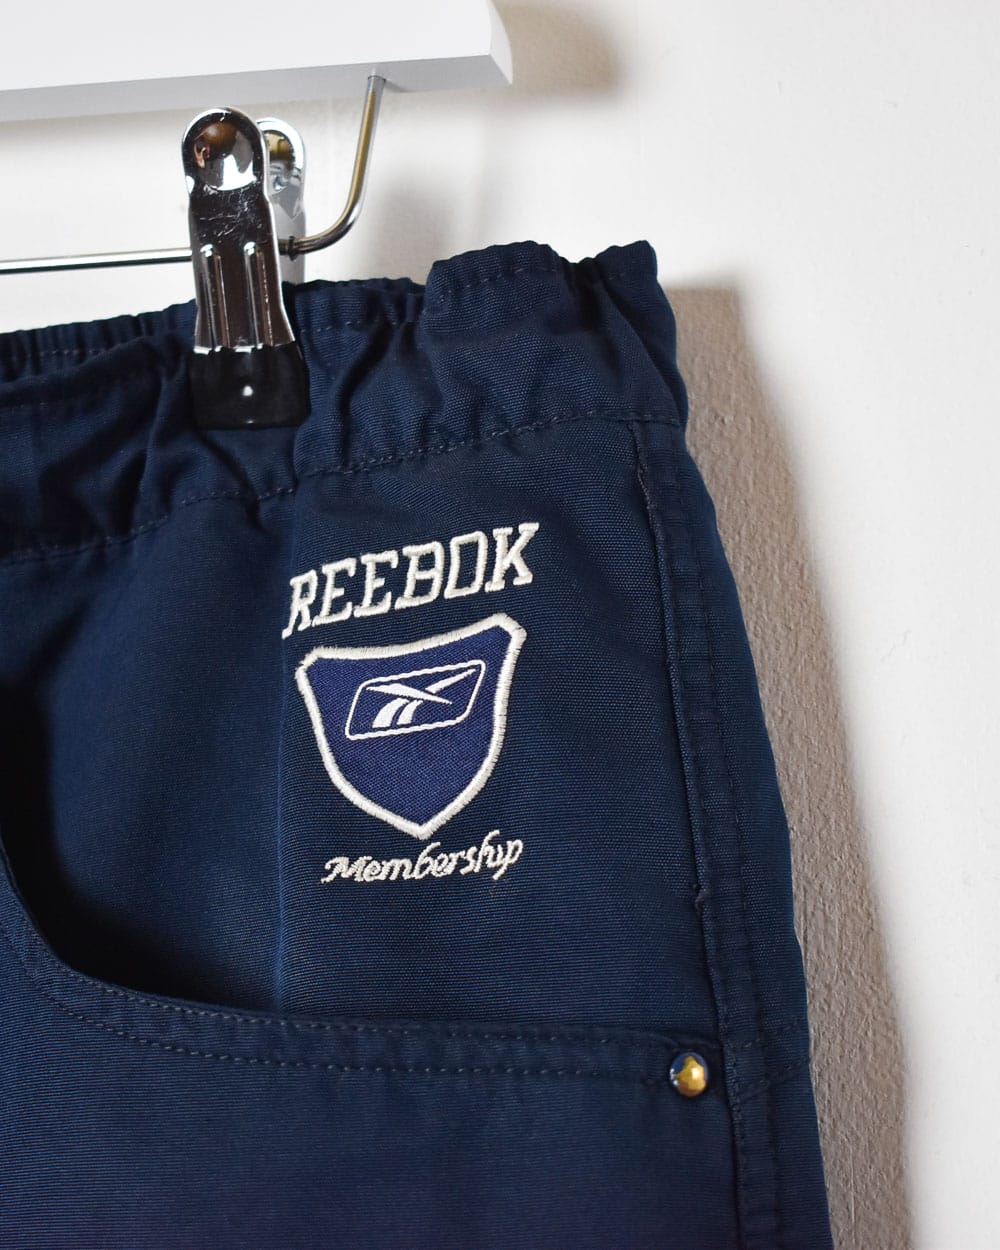 Navy Reebok Membership Shorts - Medium